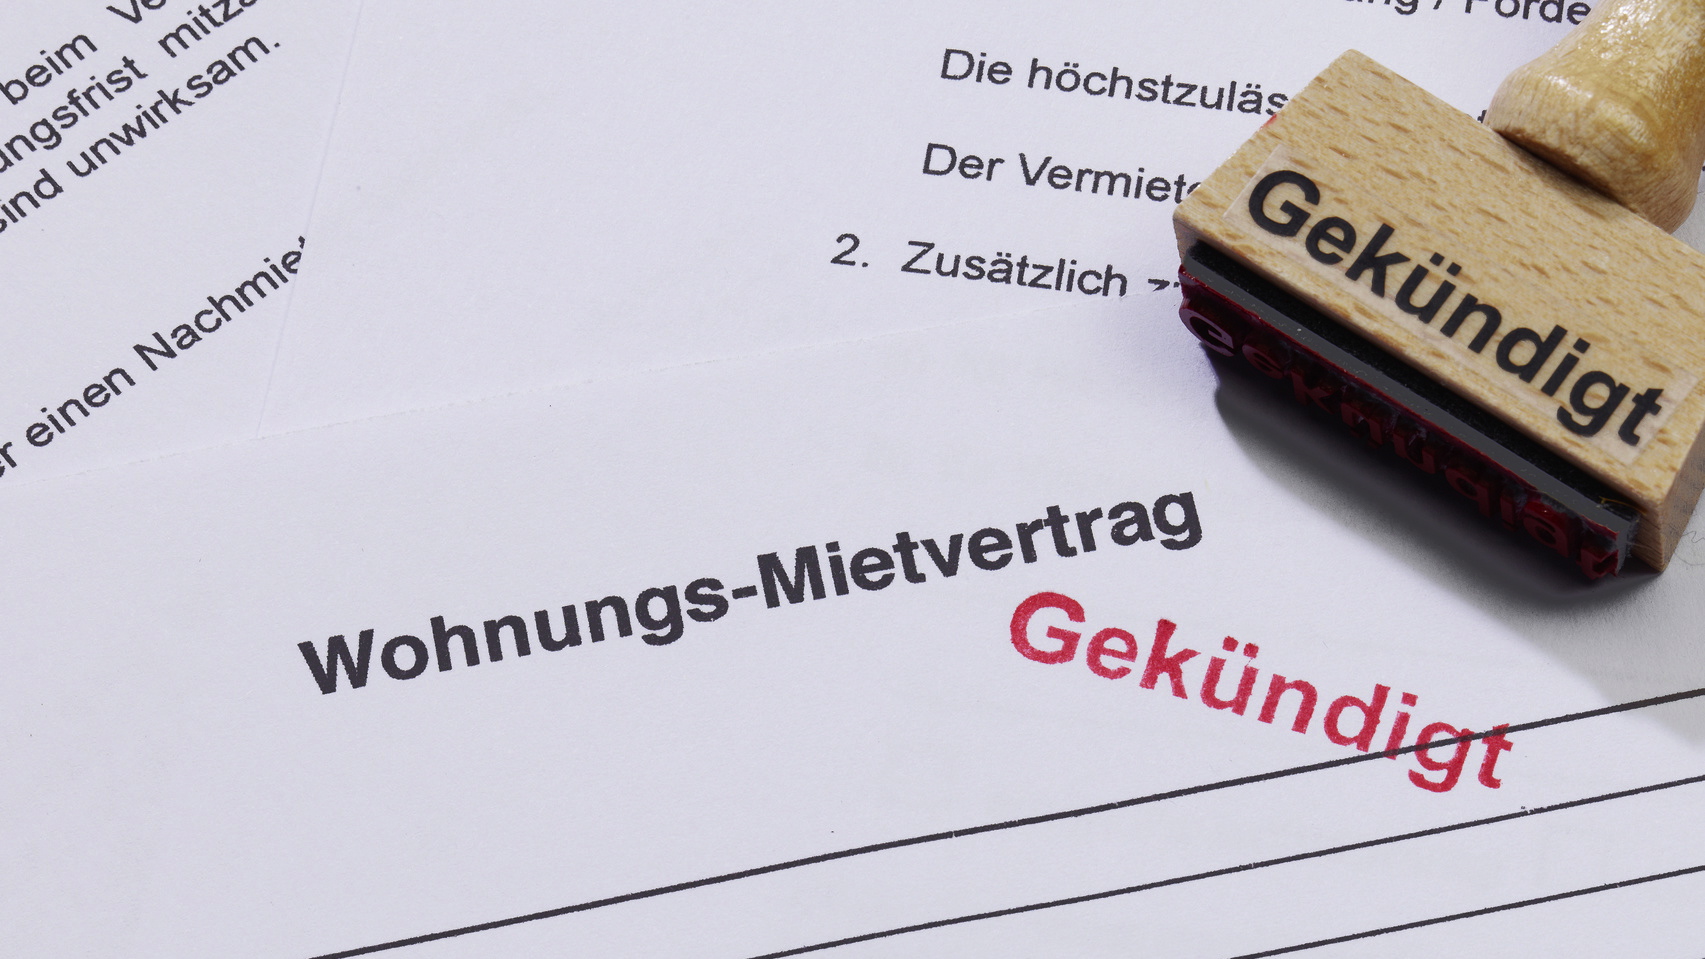 Μισθωτήριο συμβόλαιο στη Γερμανία - Όλες οι λεπτομέρειες για να μην πέσετε στην παγίδα!